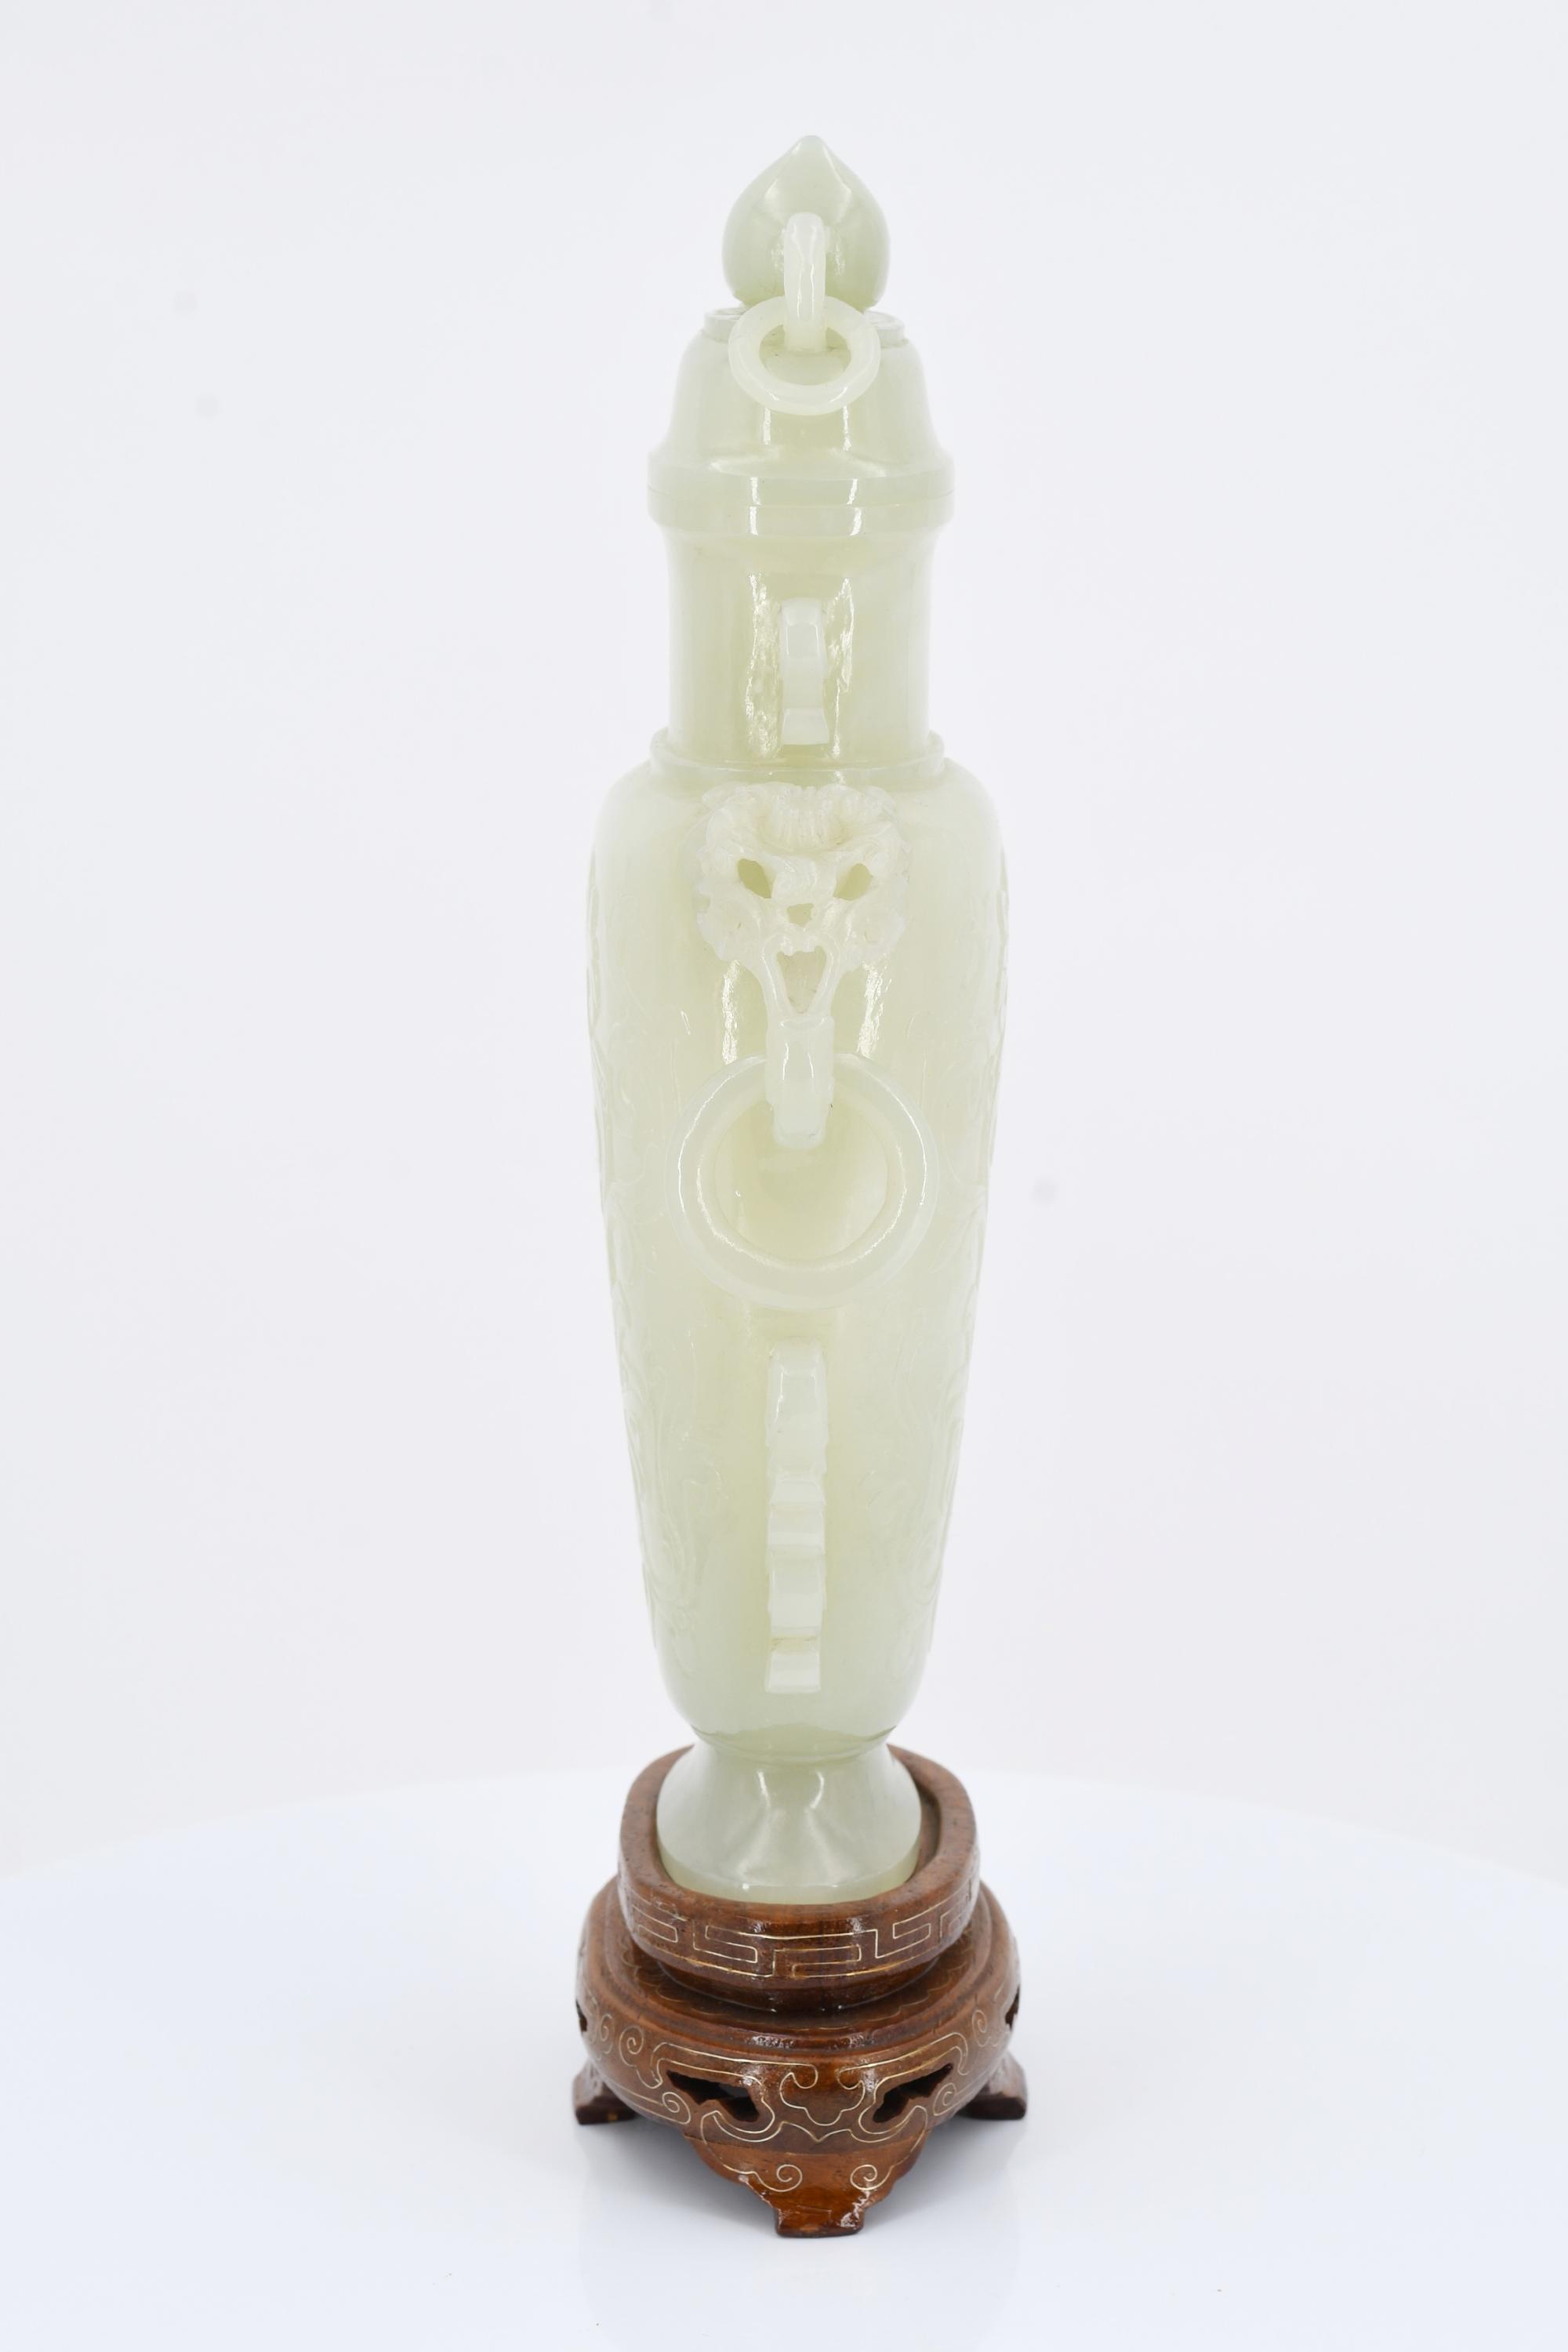 Lidded vase with pedestal - Image 5 of 7